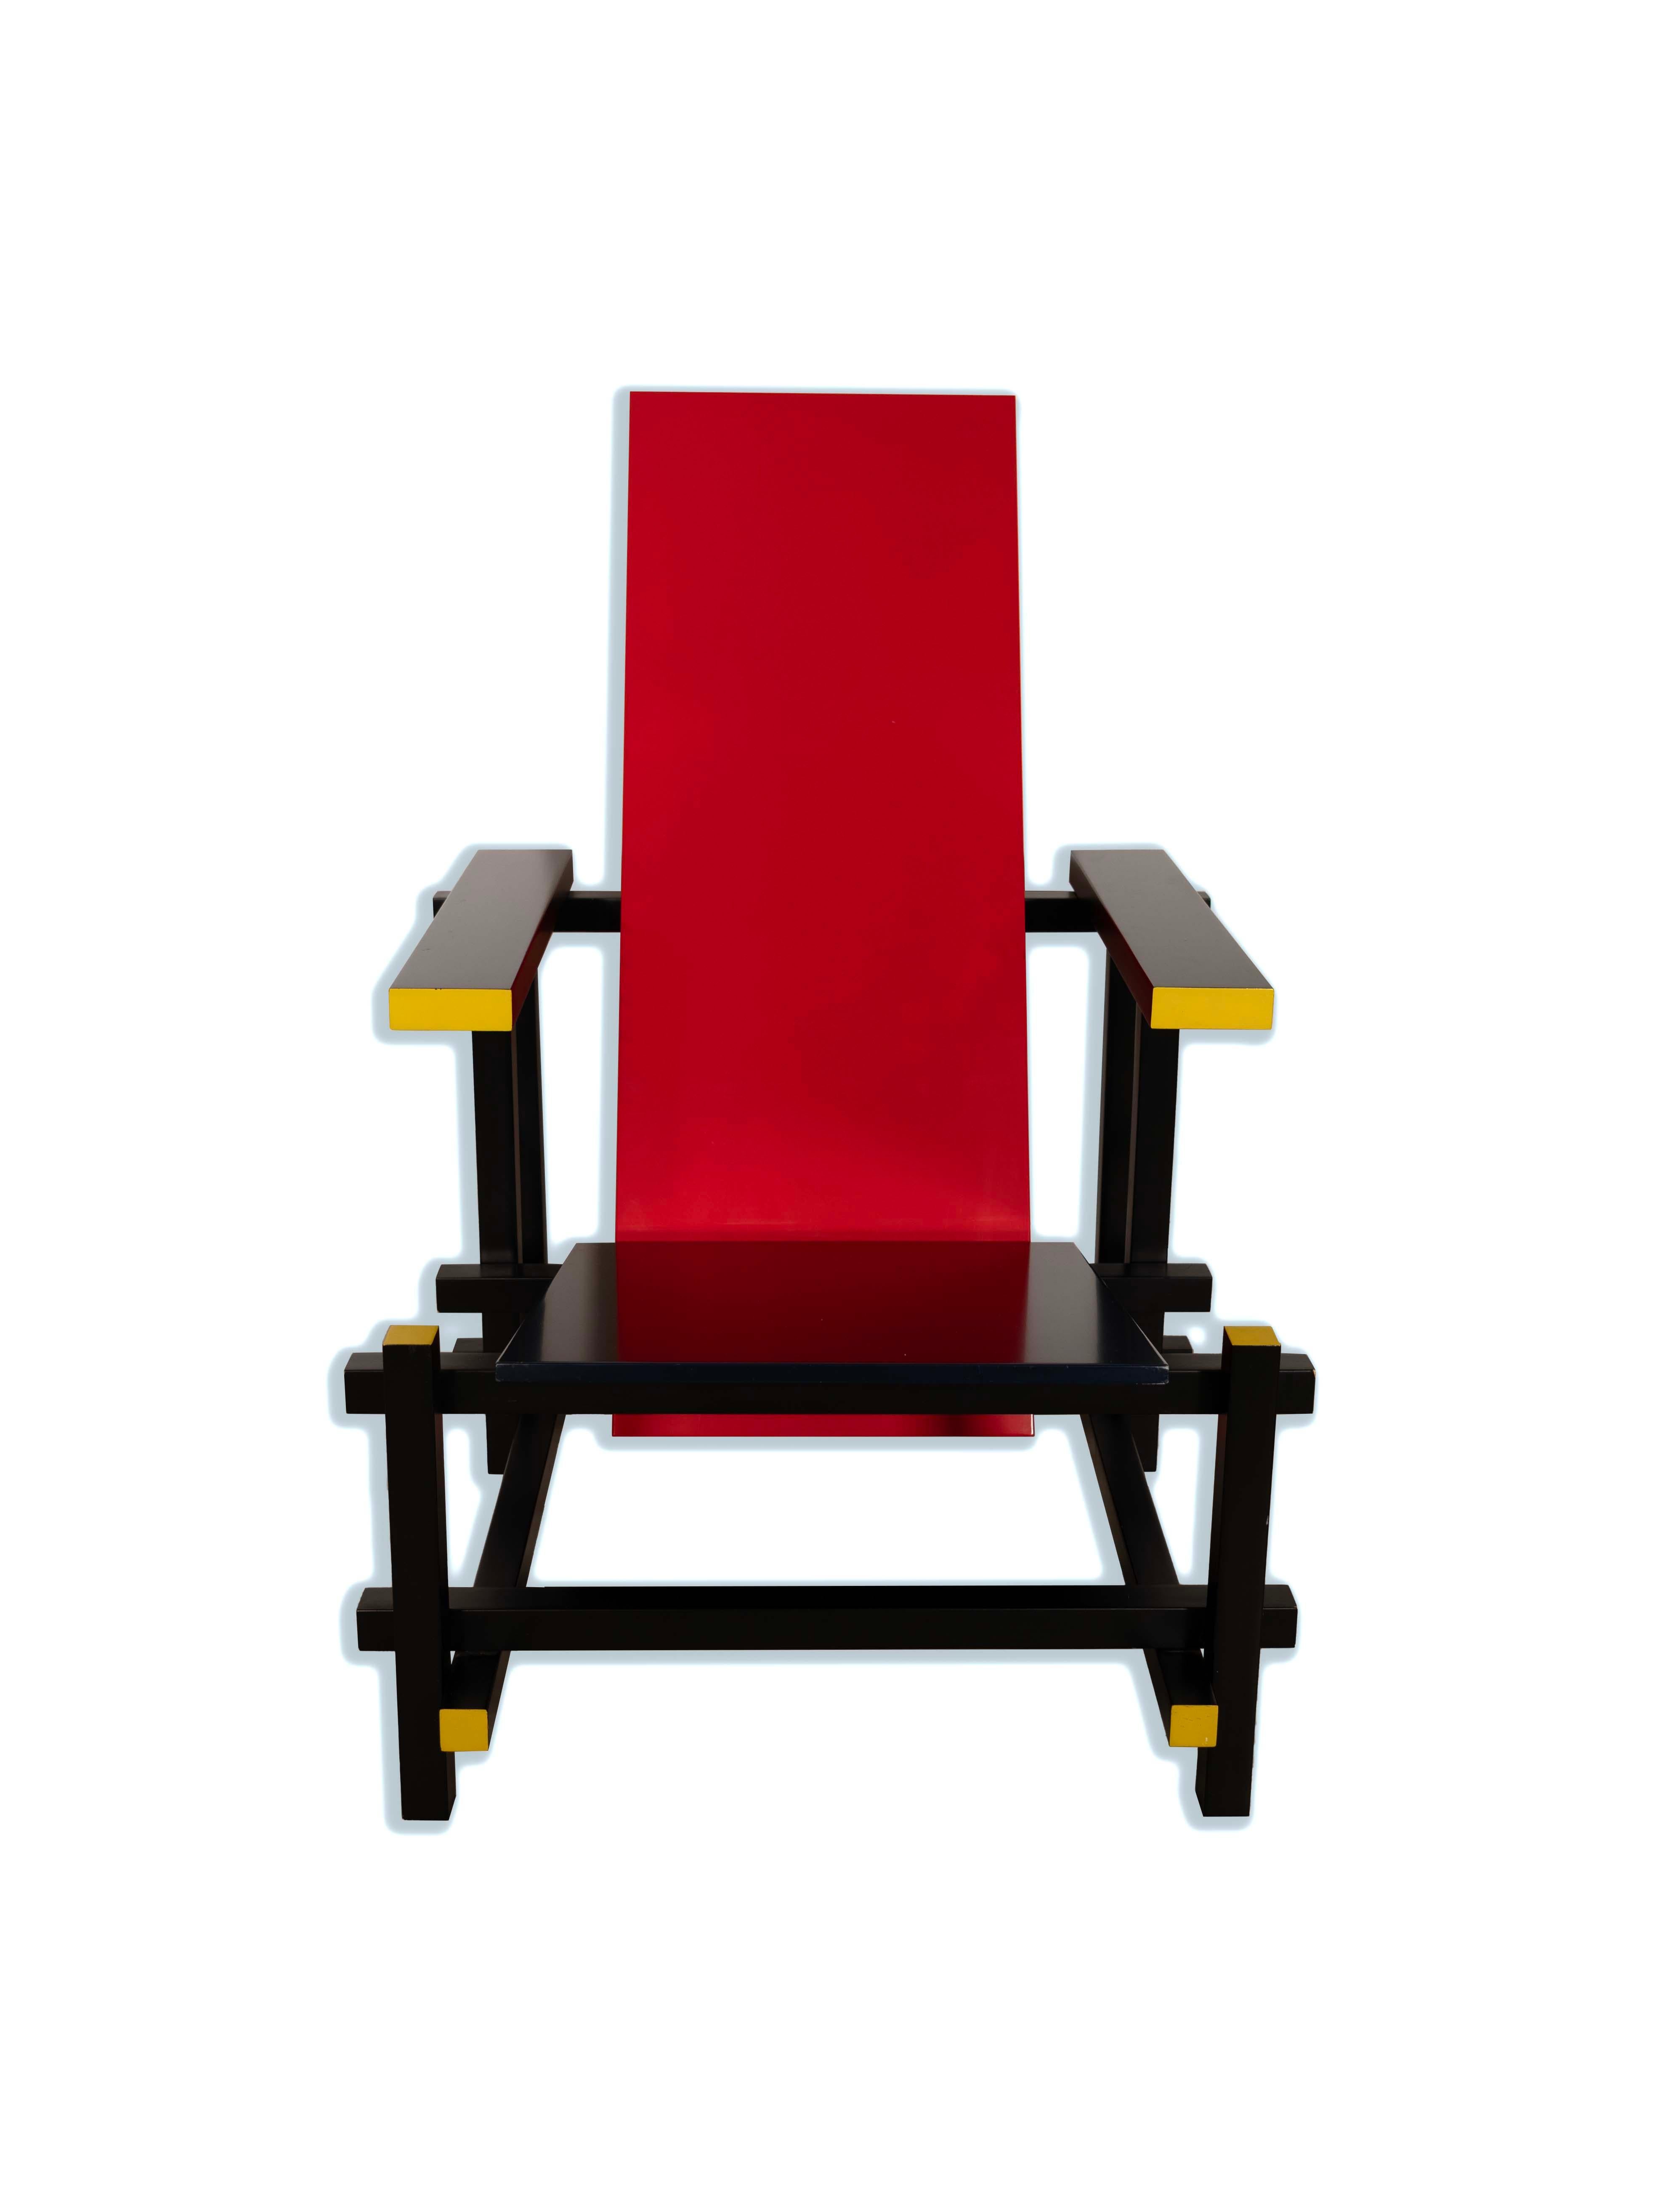 Der kühne und kunstvolle Cassina Red, Blue and Yellow Chair ist ein markantes Stück modernen Designs aus der Mitte des Jahrhunderts von Gerrit Thomas Rietveld. Die geometrische Form und das primäre Farbschema spiegeln den Einfluss der